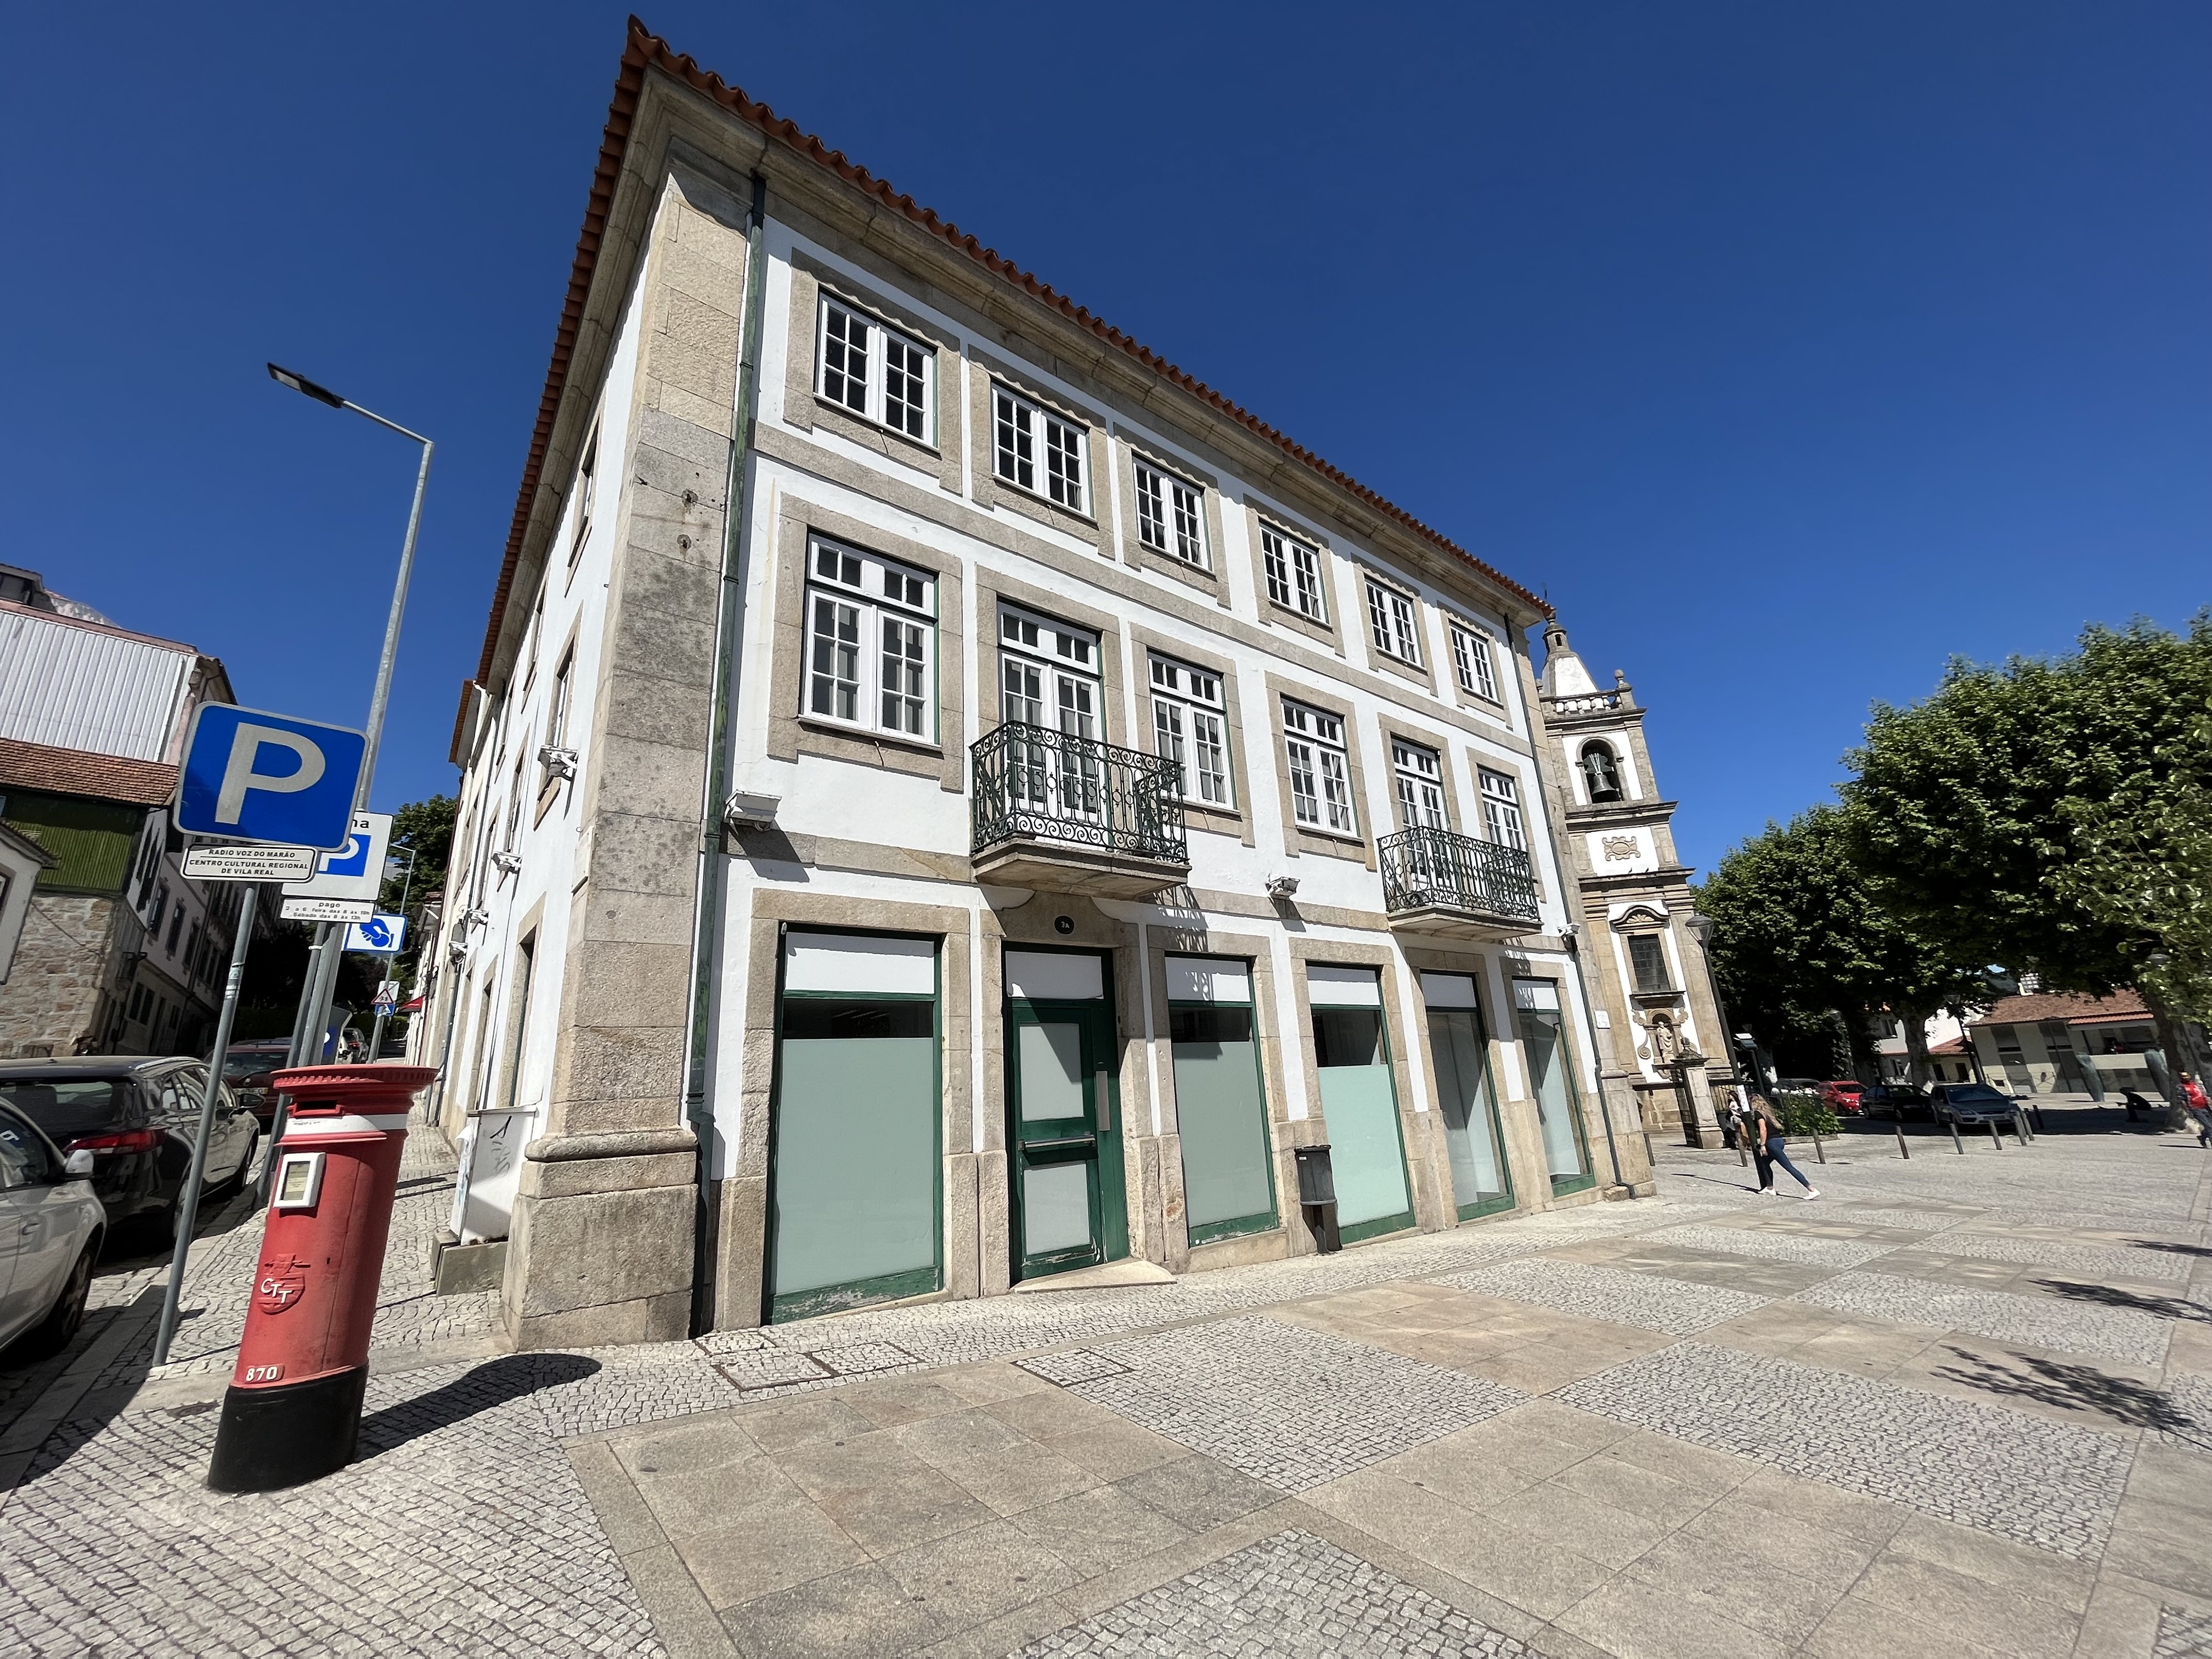 Foto 1 Vila Real, uma cidade dinâmica onde o interesse imobiliário aumenta